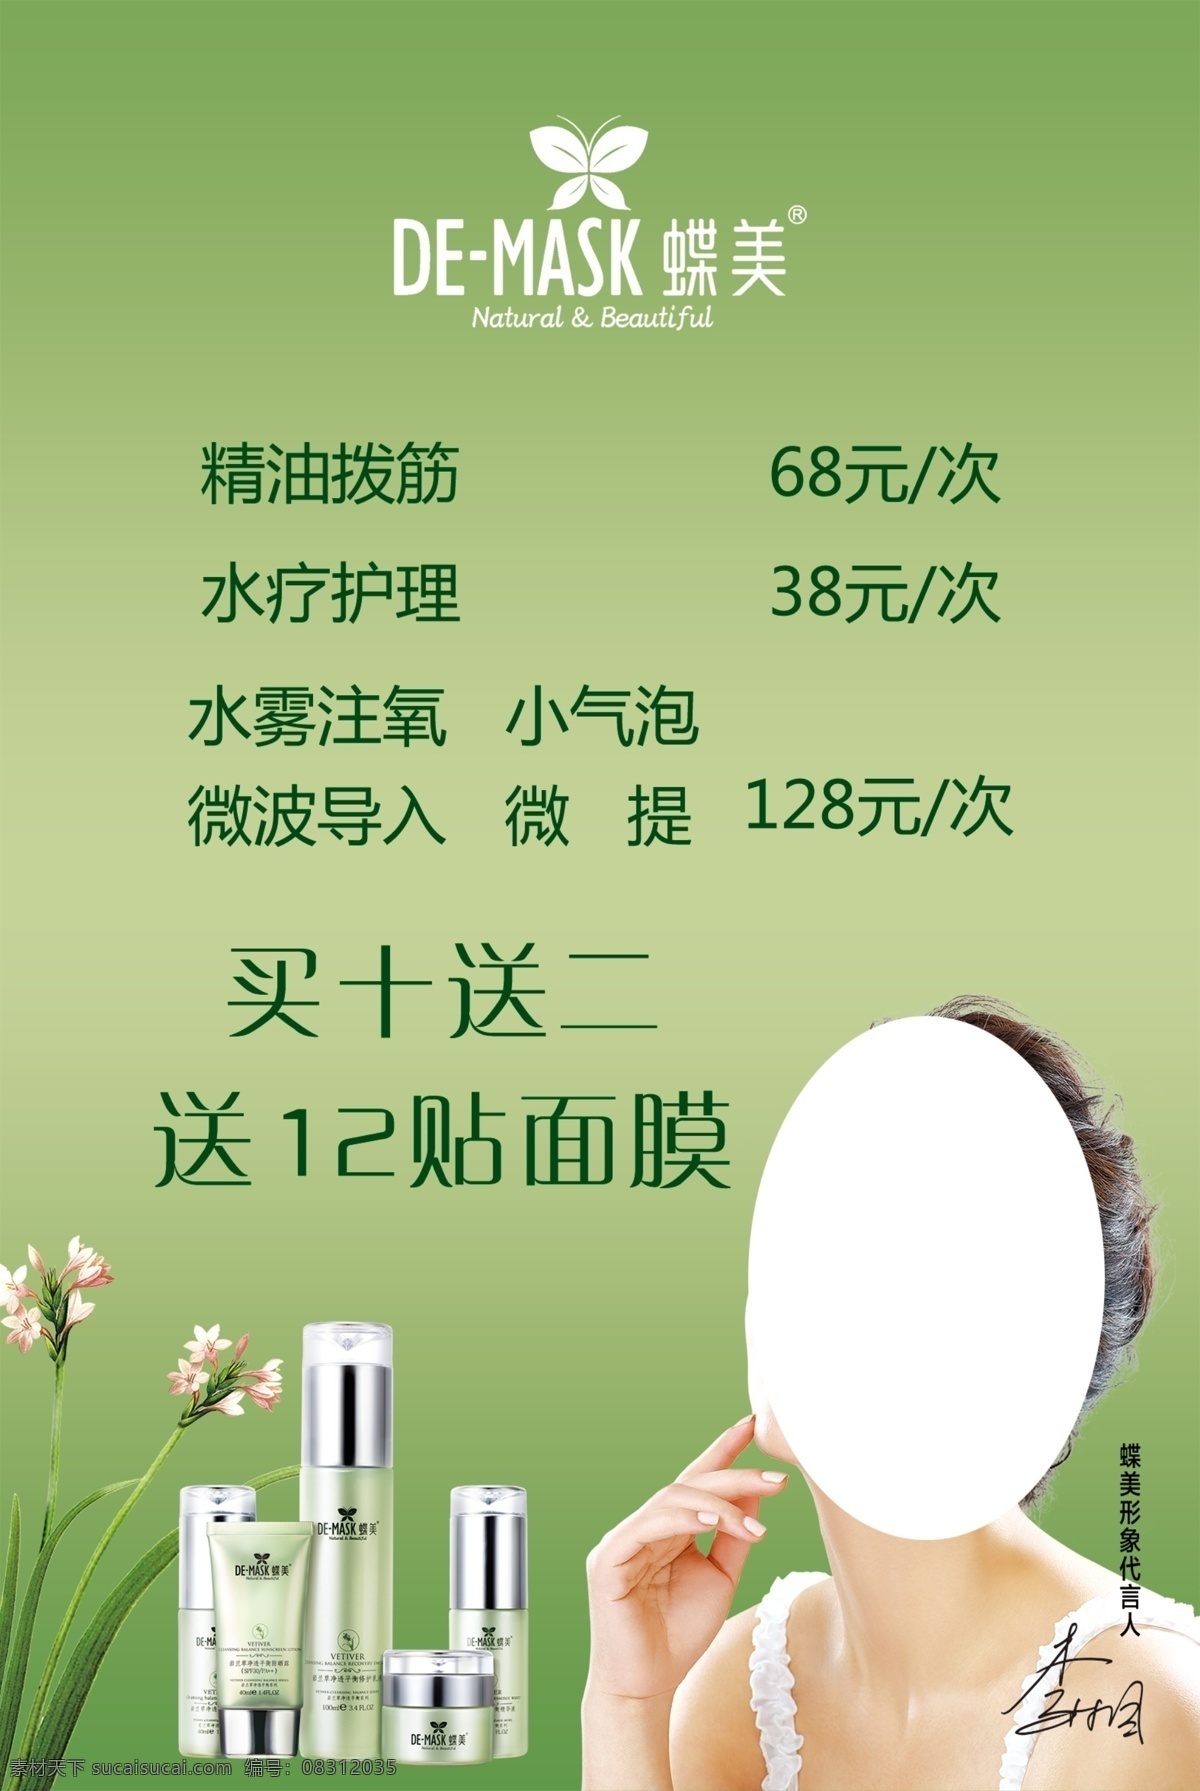 蝶美 价格表 化妆品 面膜 代言人 李湘 绿色背景 价格 兰花 拨筋 护肤 分层